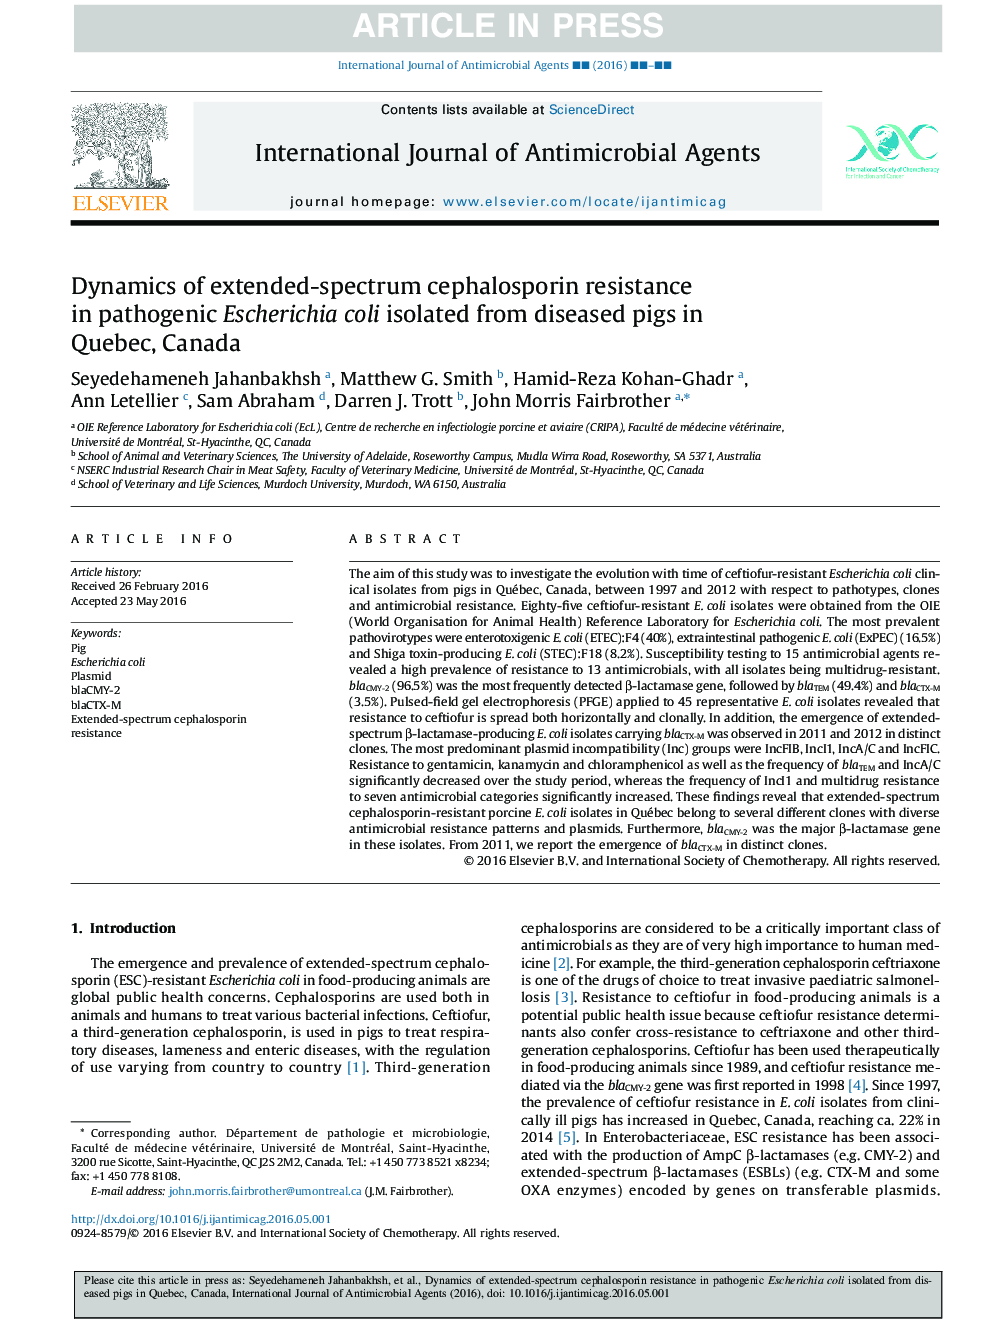 دینامیک مقاومت به سفالوسپورین طیف گسترده ای در اشرشیاکلی پاتوژن جدا شده از خوک های بیمارستانی در کبک، کانادا 